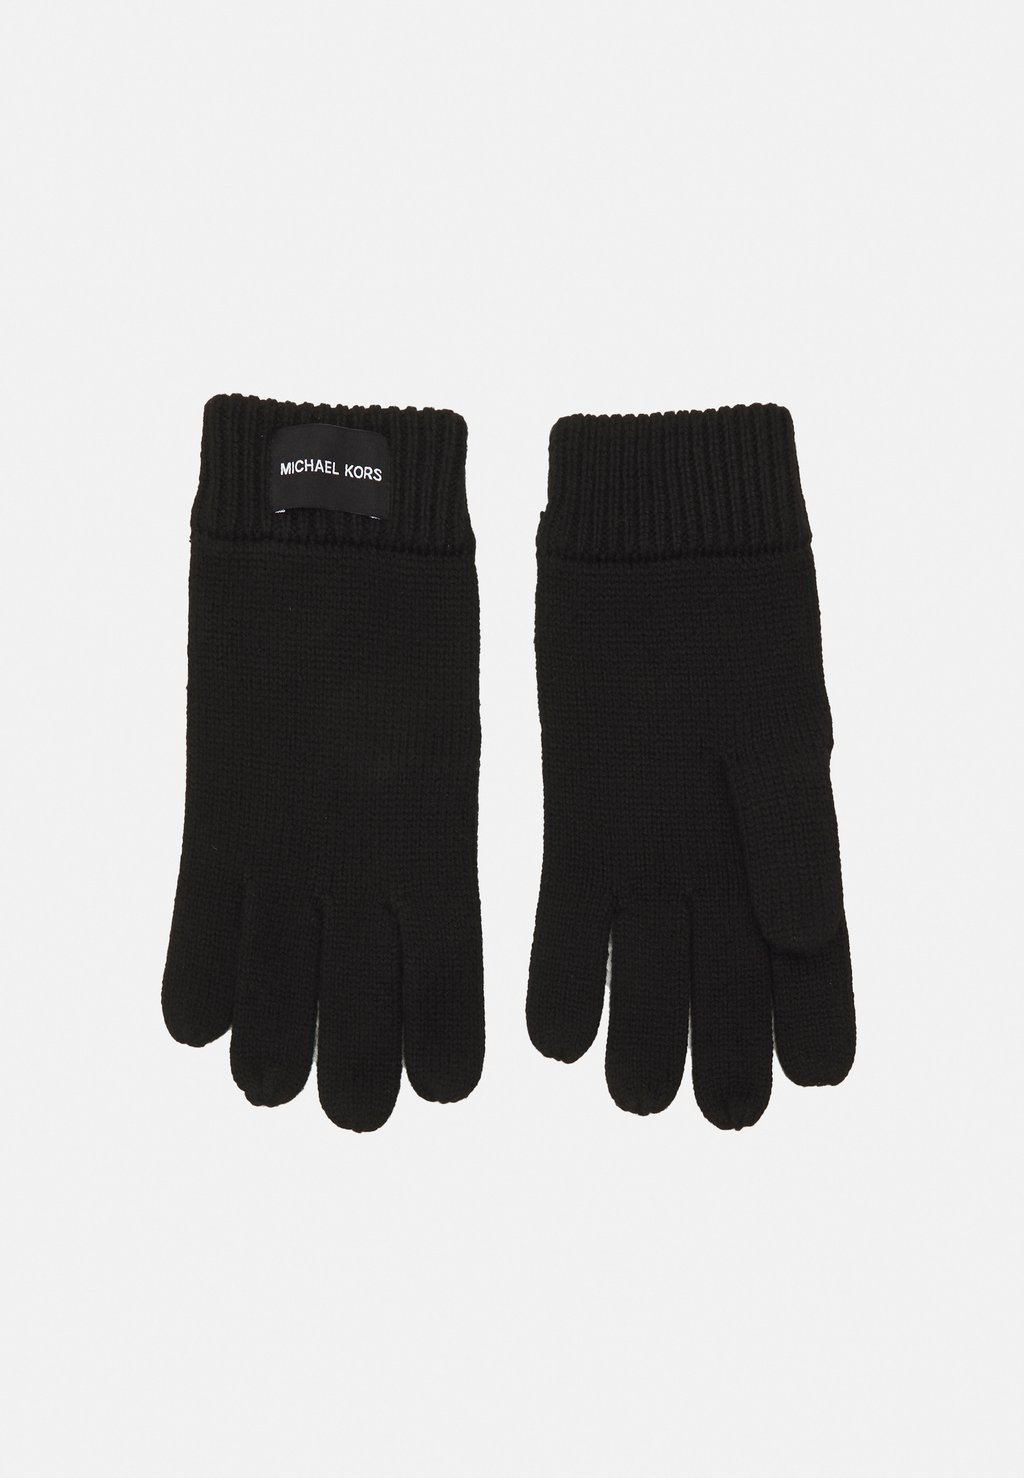 Перчатки Thermal Patch Gloves Unisex Michael Kors, черный перчатки uniqlo heattech lined thermal gloves черный